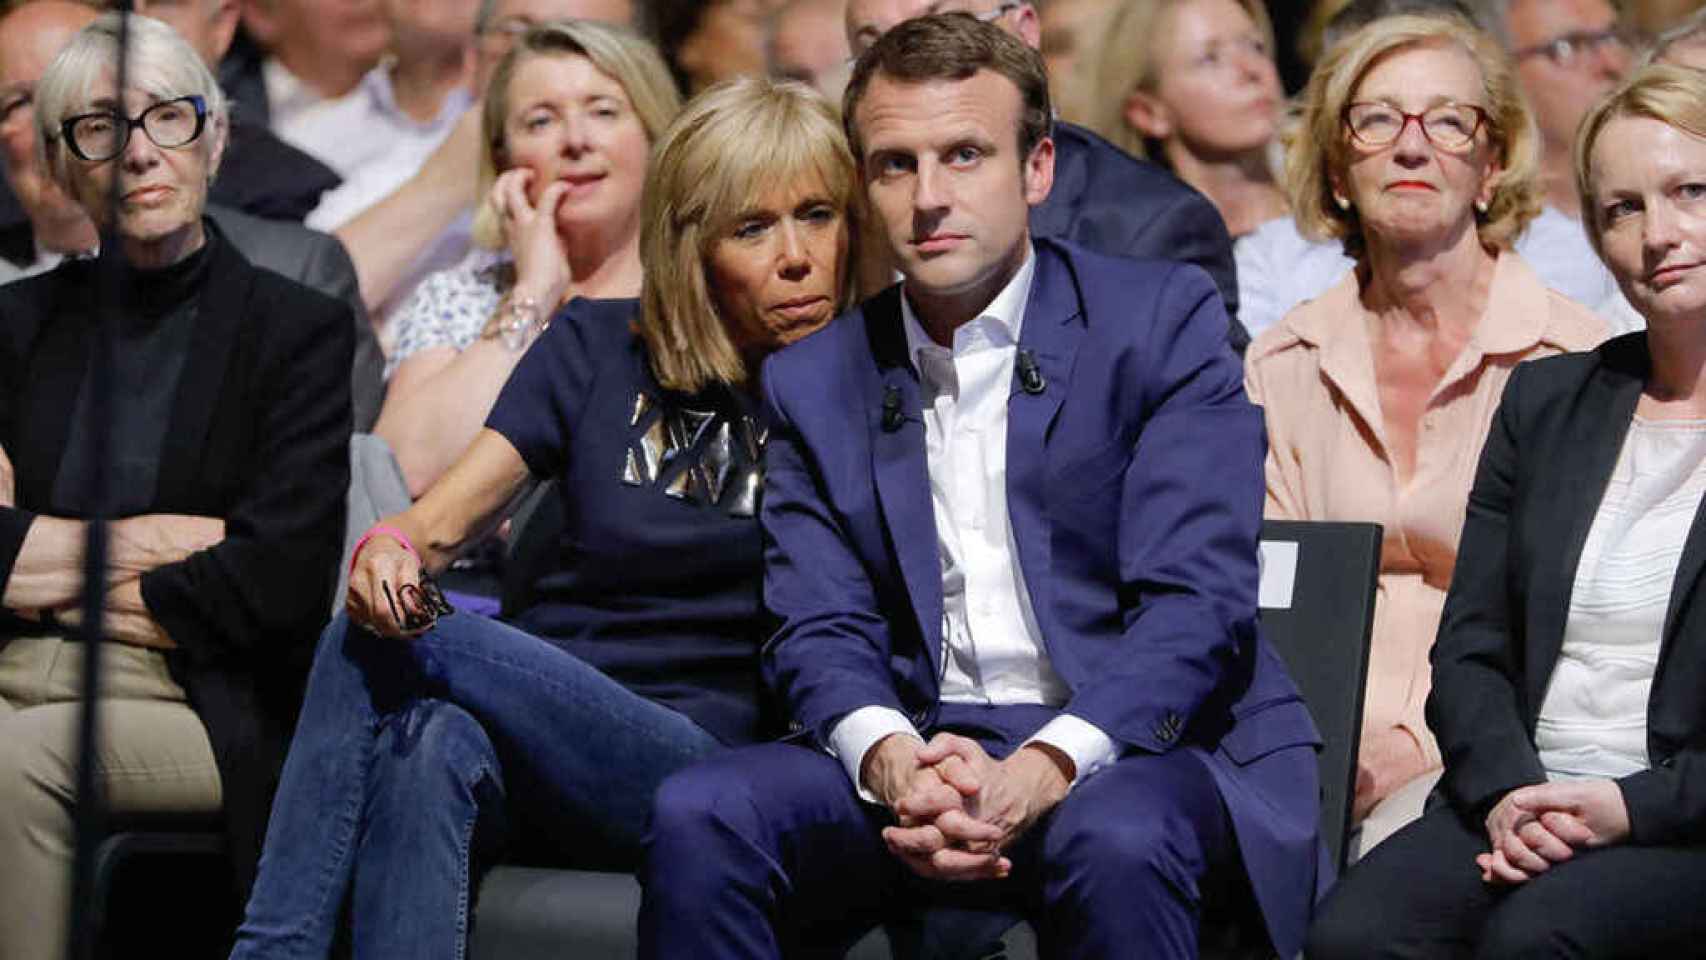 El matrimonio Macron en uno de los actos del presidente.